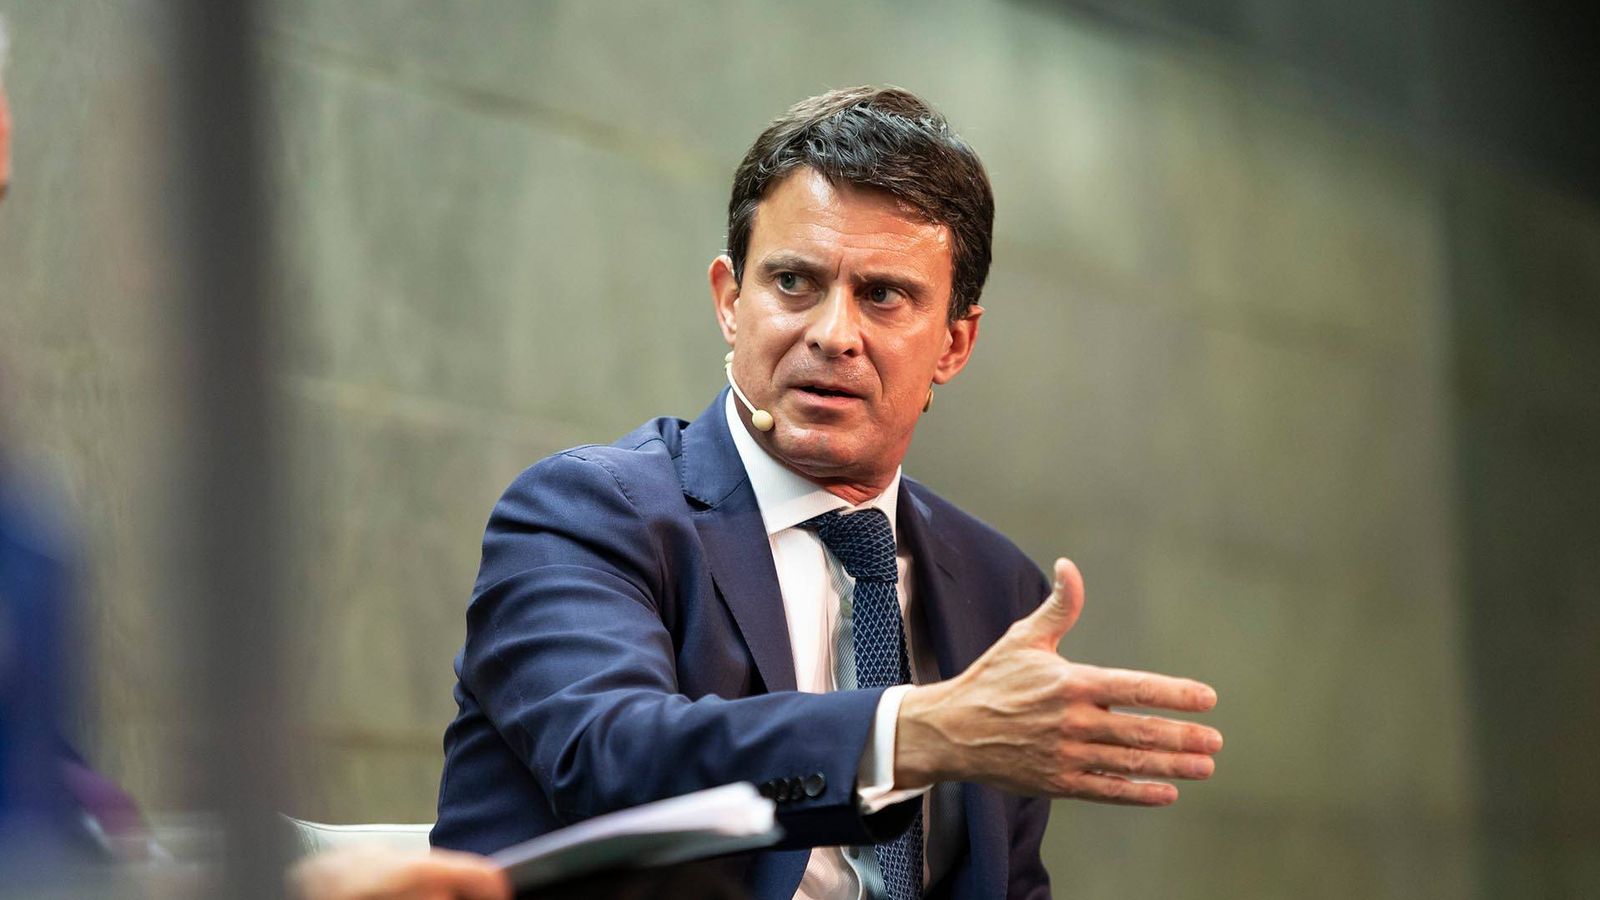 Foto: El candidato a la alcaldía de Barcelona, Manuel Valls, el pasado martes durante su intervención. (Fundación Rafael del Pino)